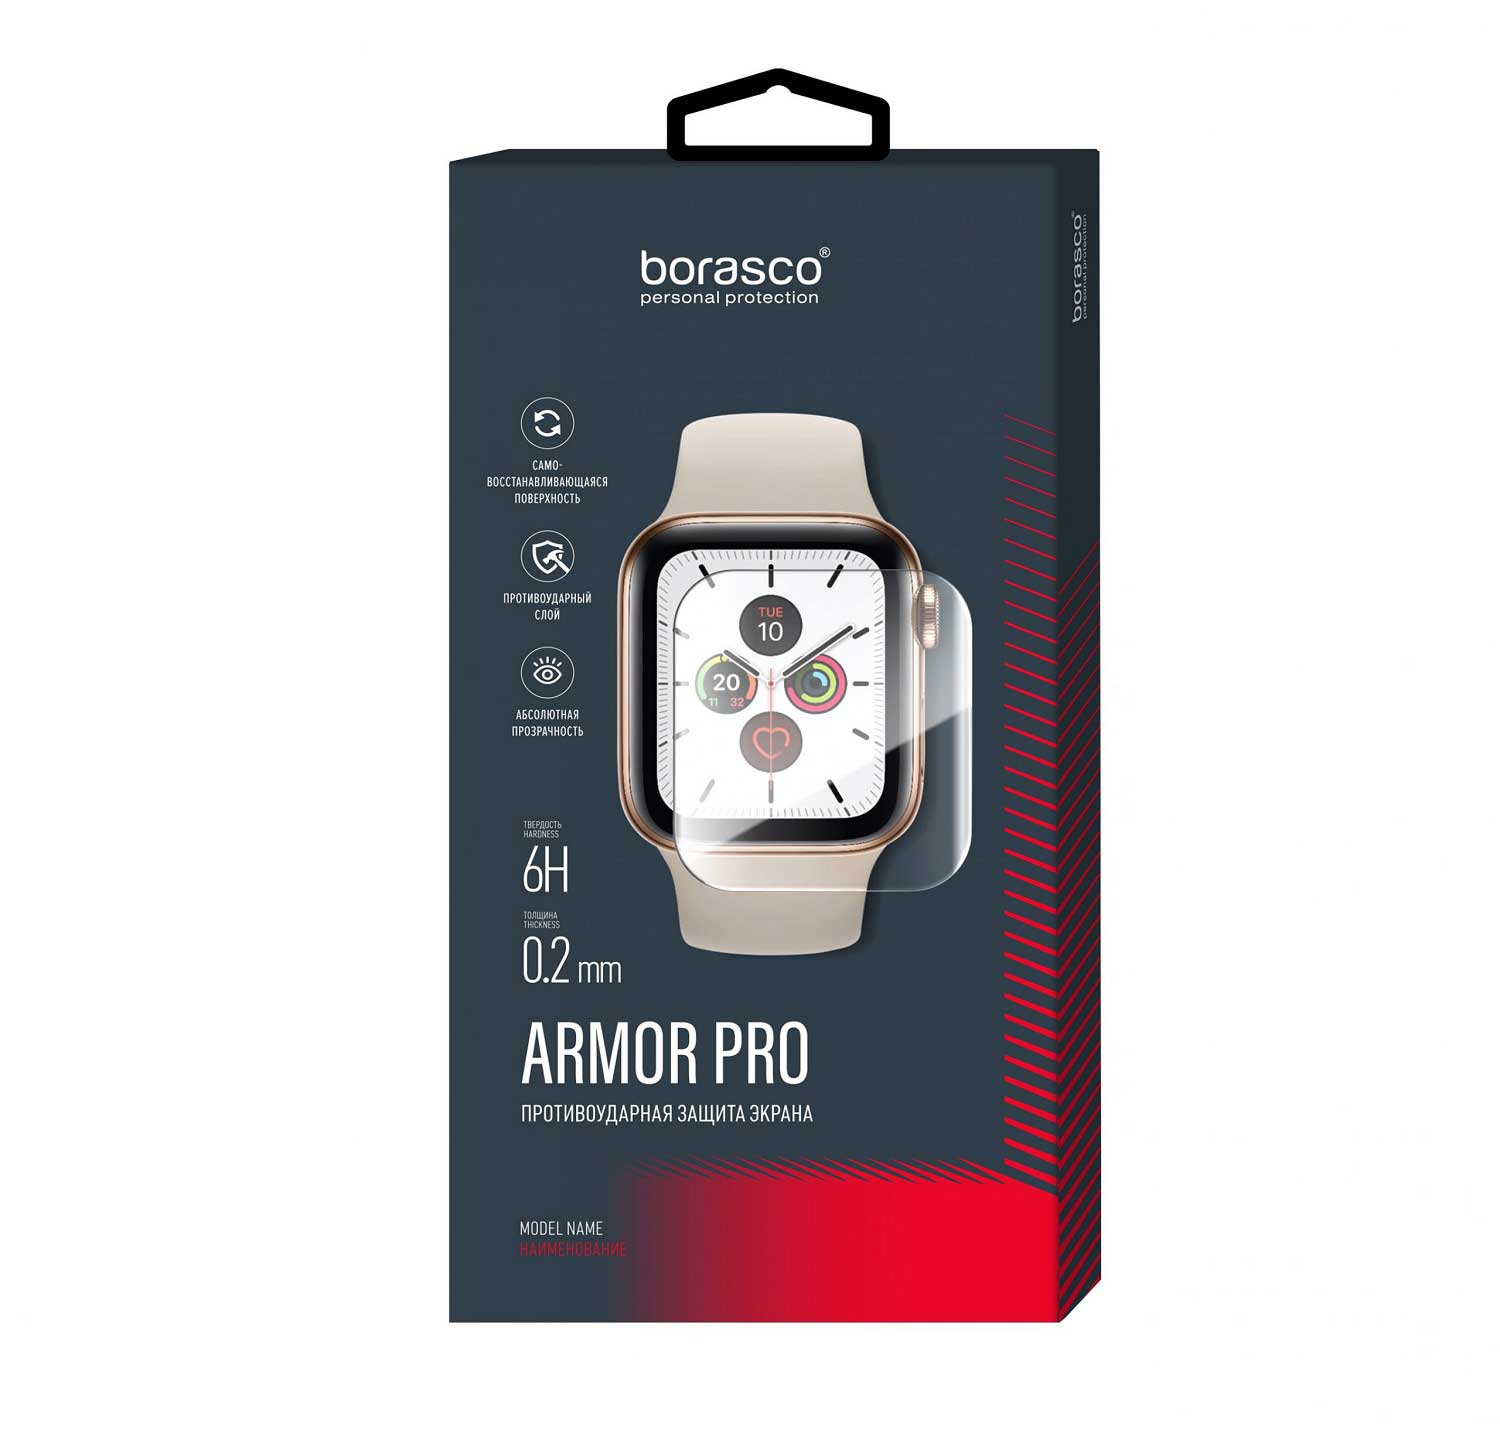 Защита экрана BoraSCO Armor Pro для Xiaomi Mi Band 3 матовый защита экрана borasco armor pro для honor band 4 5 матовый